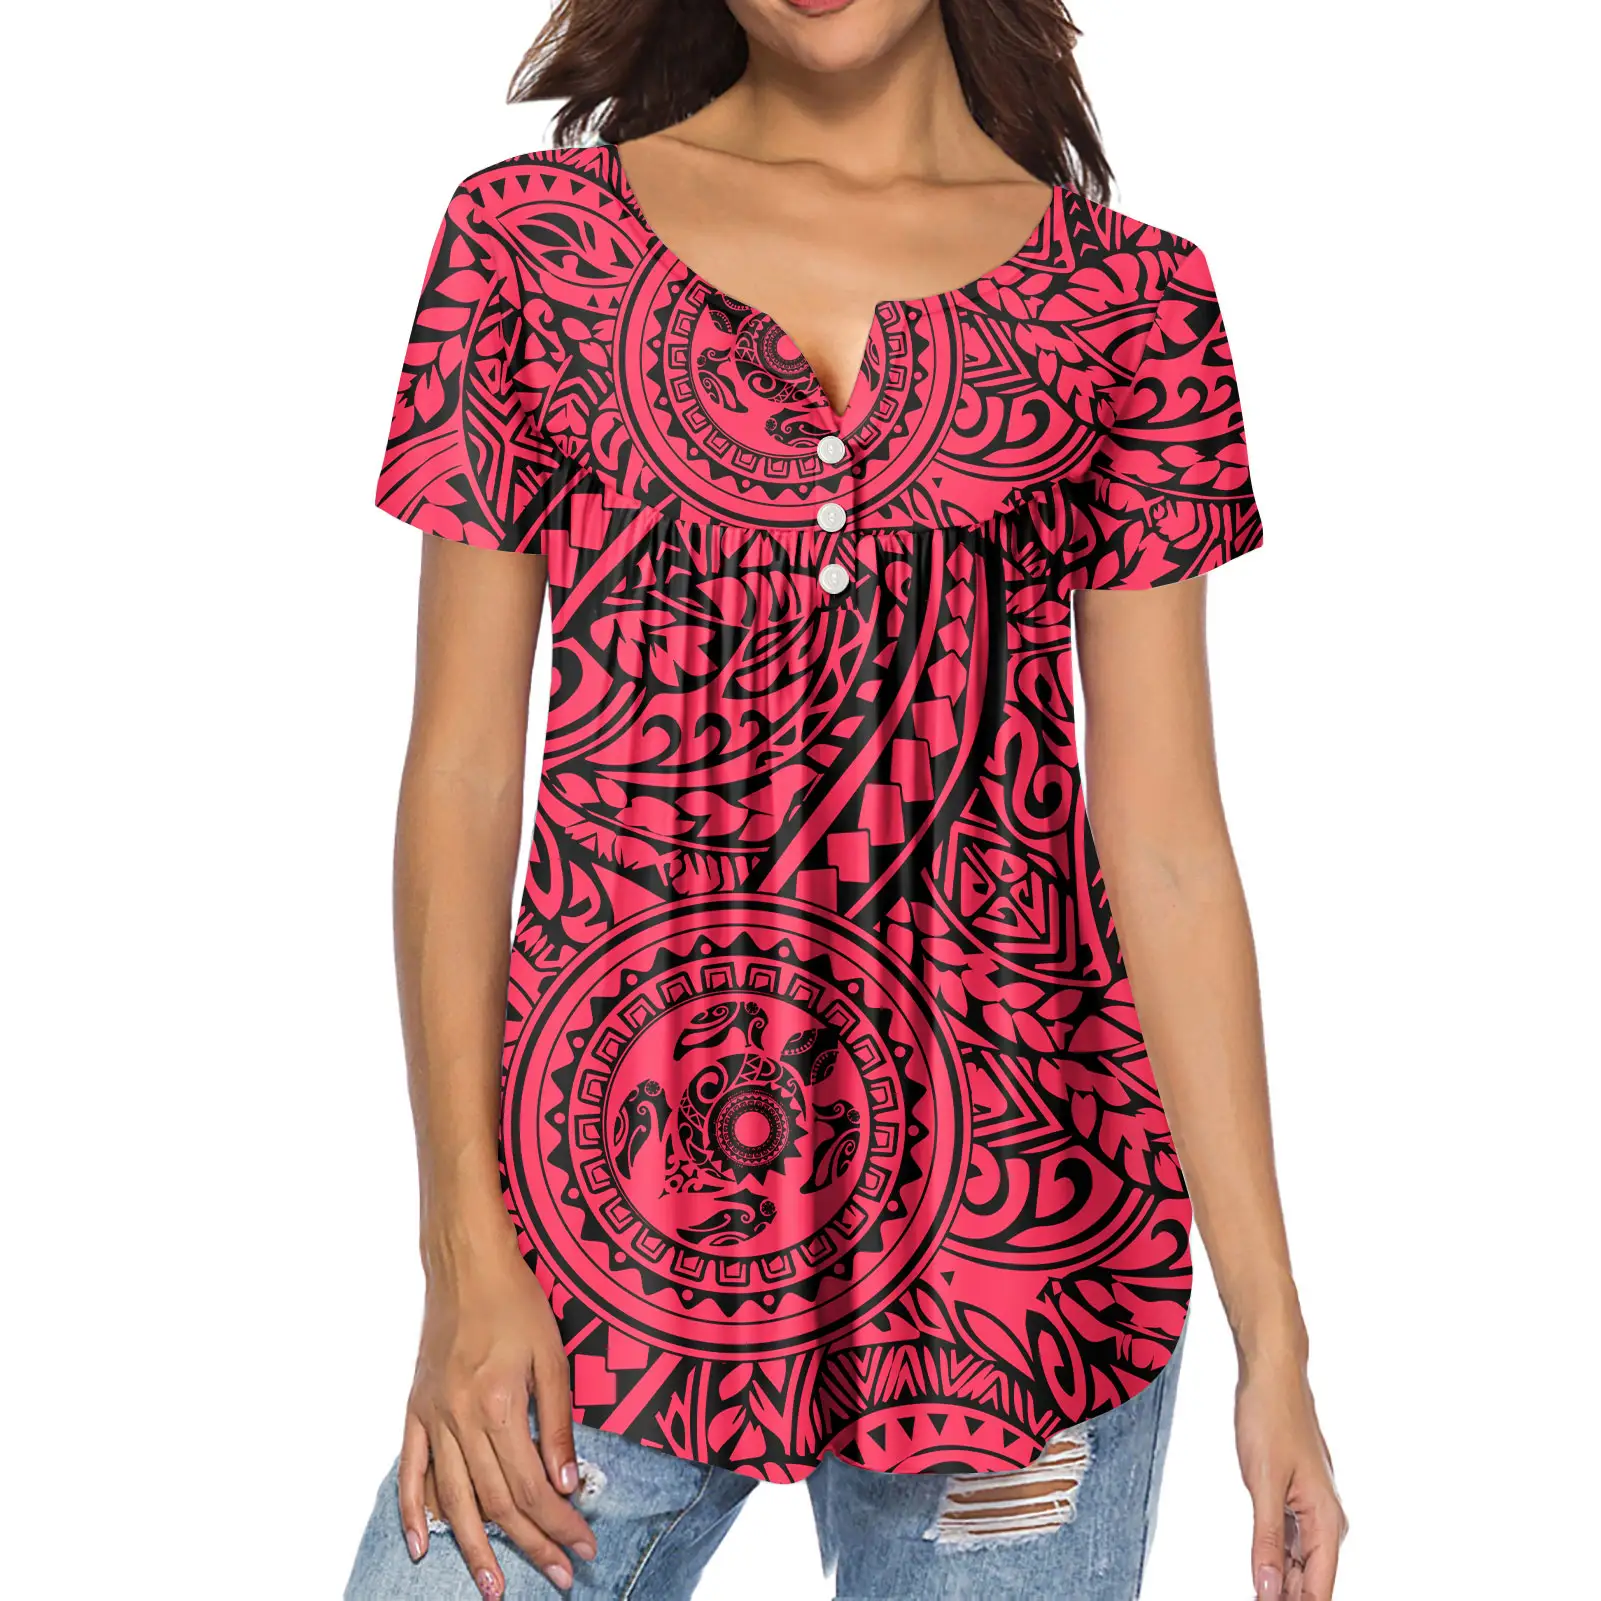 Rojo Hawai diseños Polinesia Tribal mujer camisas y blusas encargo especial blusas genial de gasa blusas